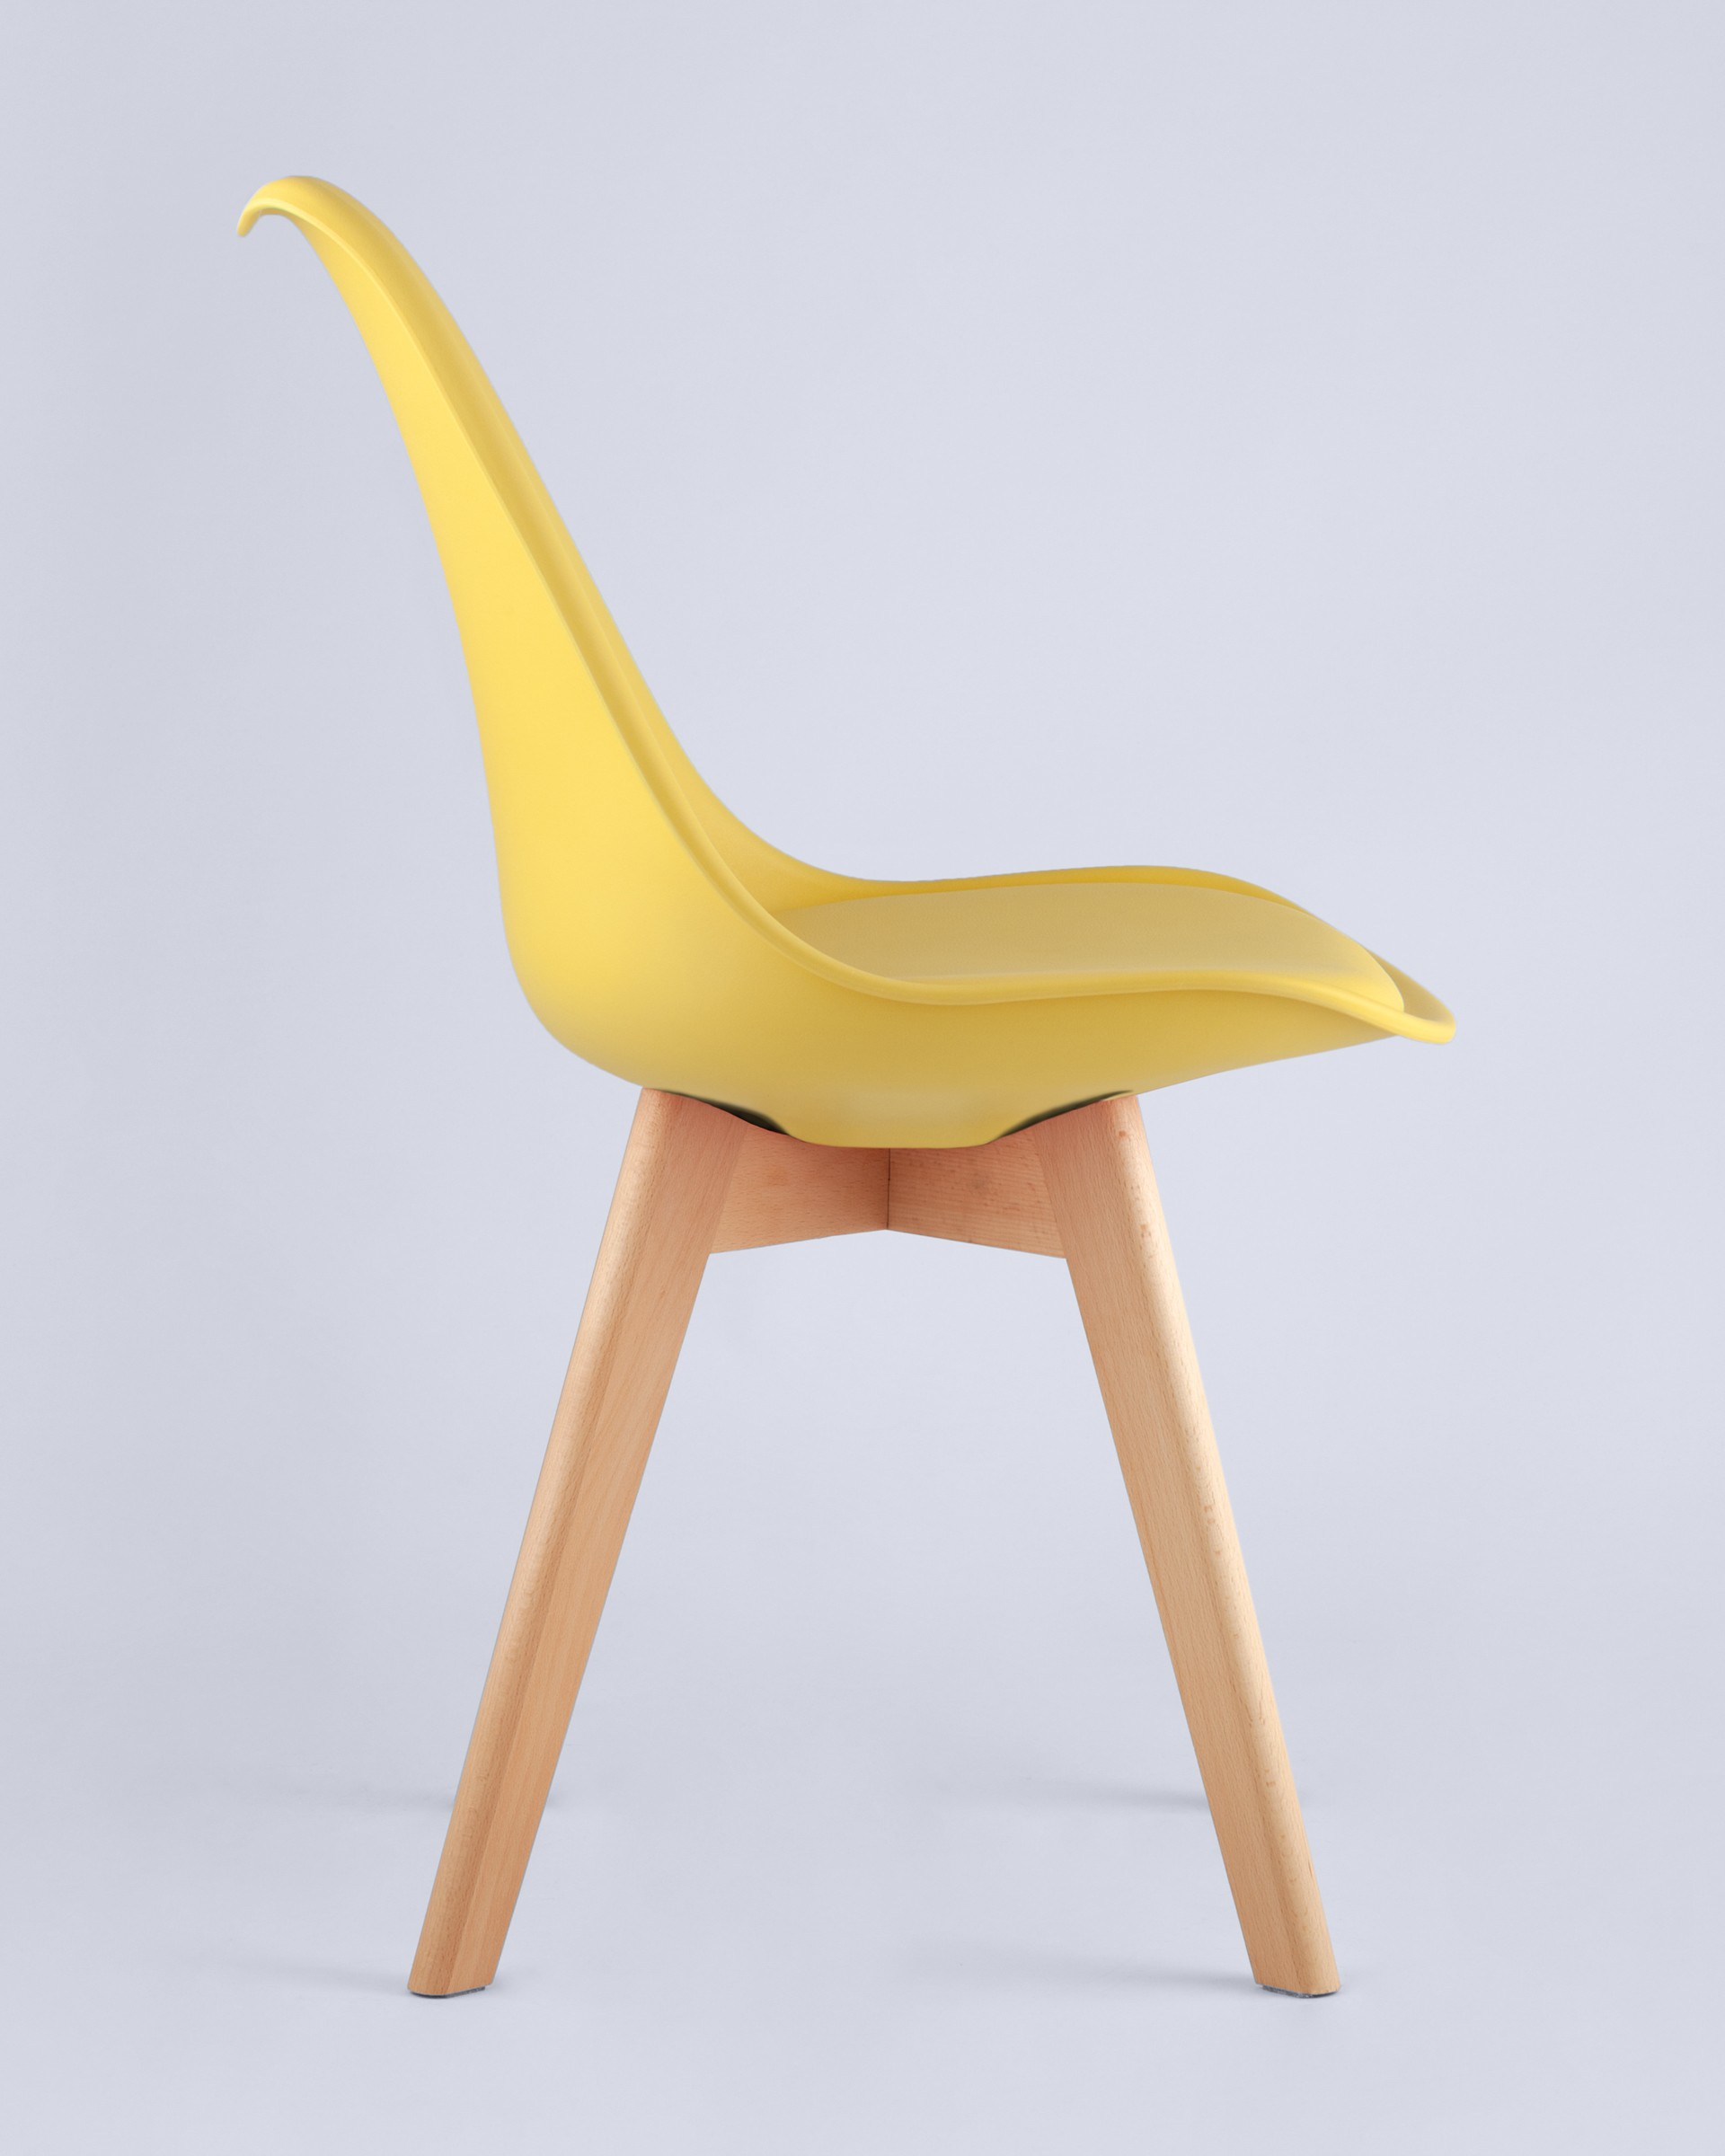 Стул Frankfurt желтый, сиденье из сочетания пластика и экокожи, ножки деревянные